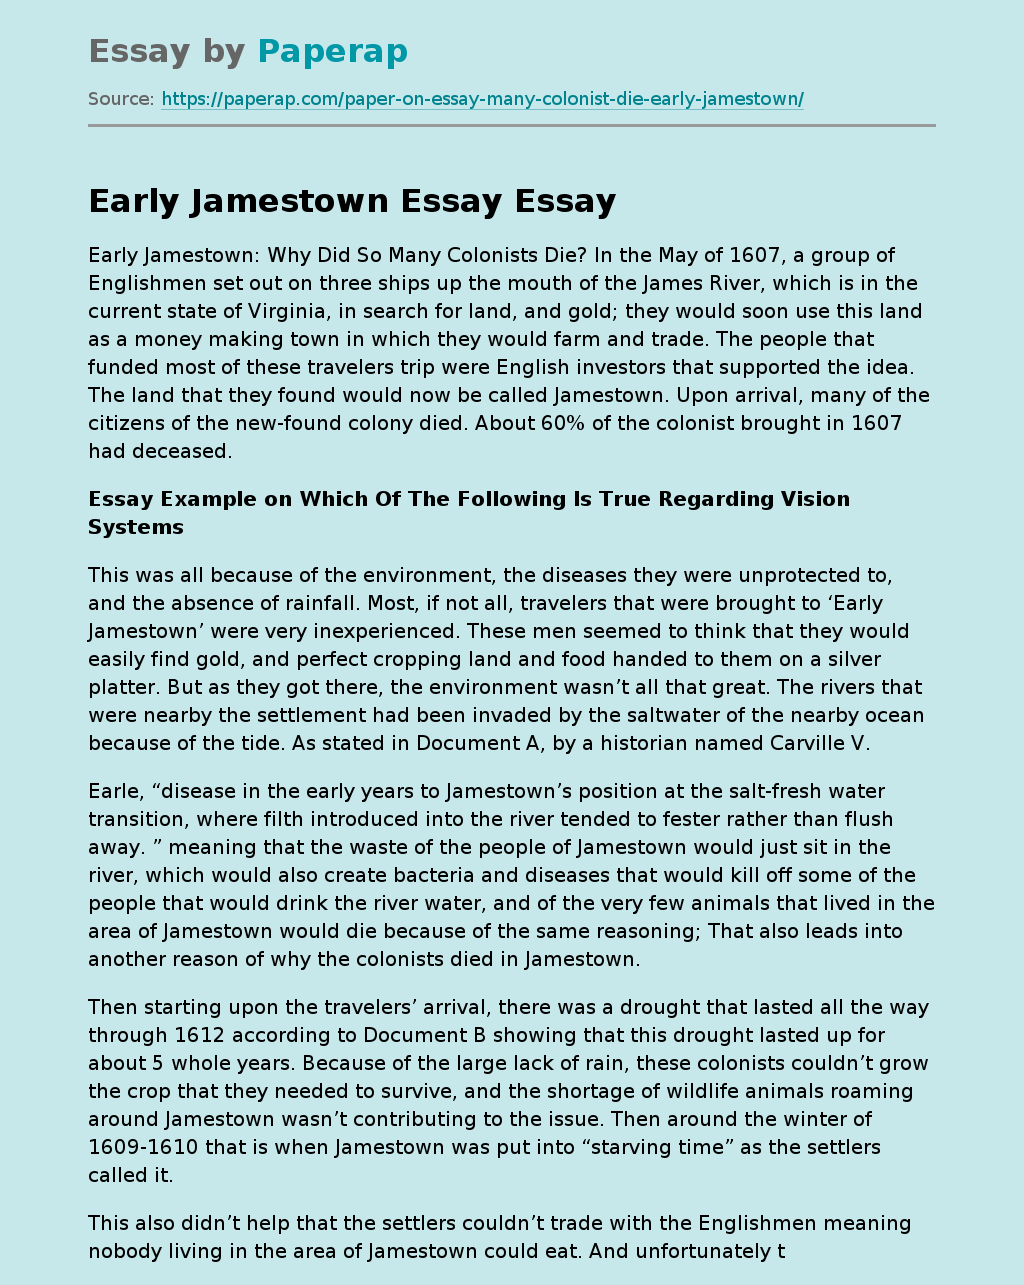 Early Jamestown Essay